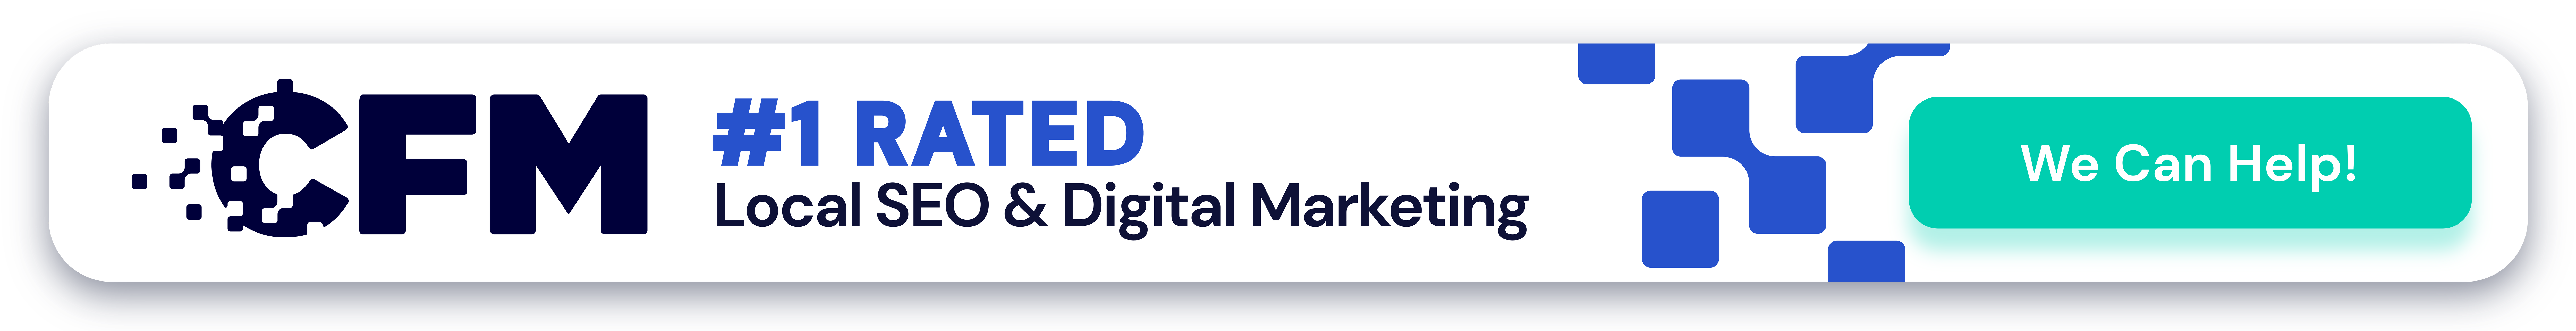 CFM - Nashville & Franklin TN SEO and Digital Marketing Services banner